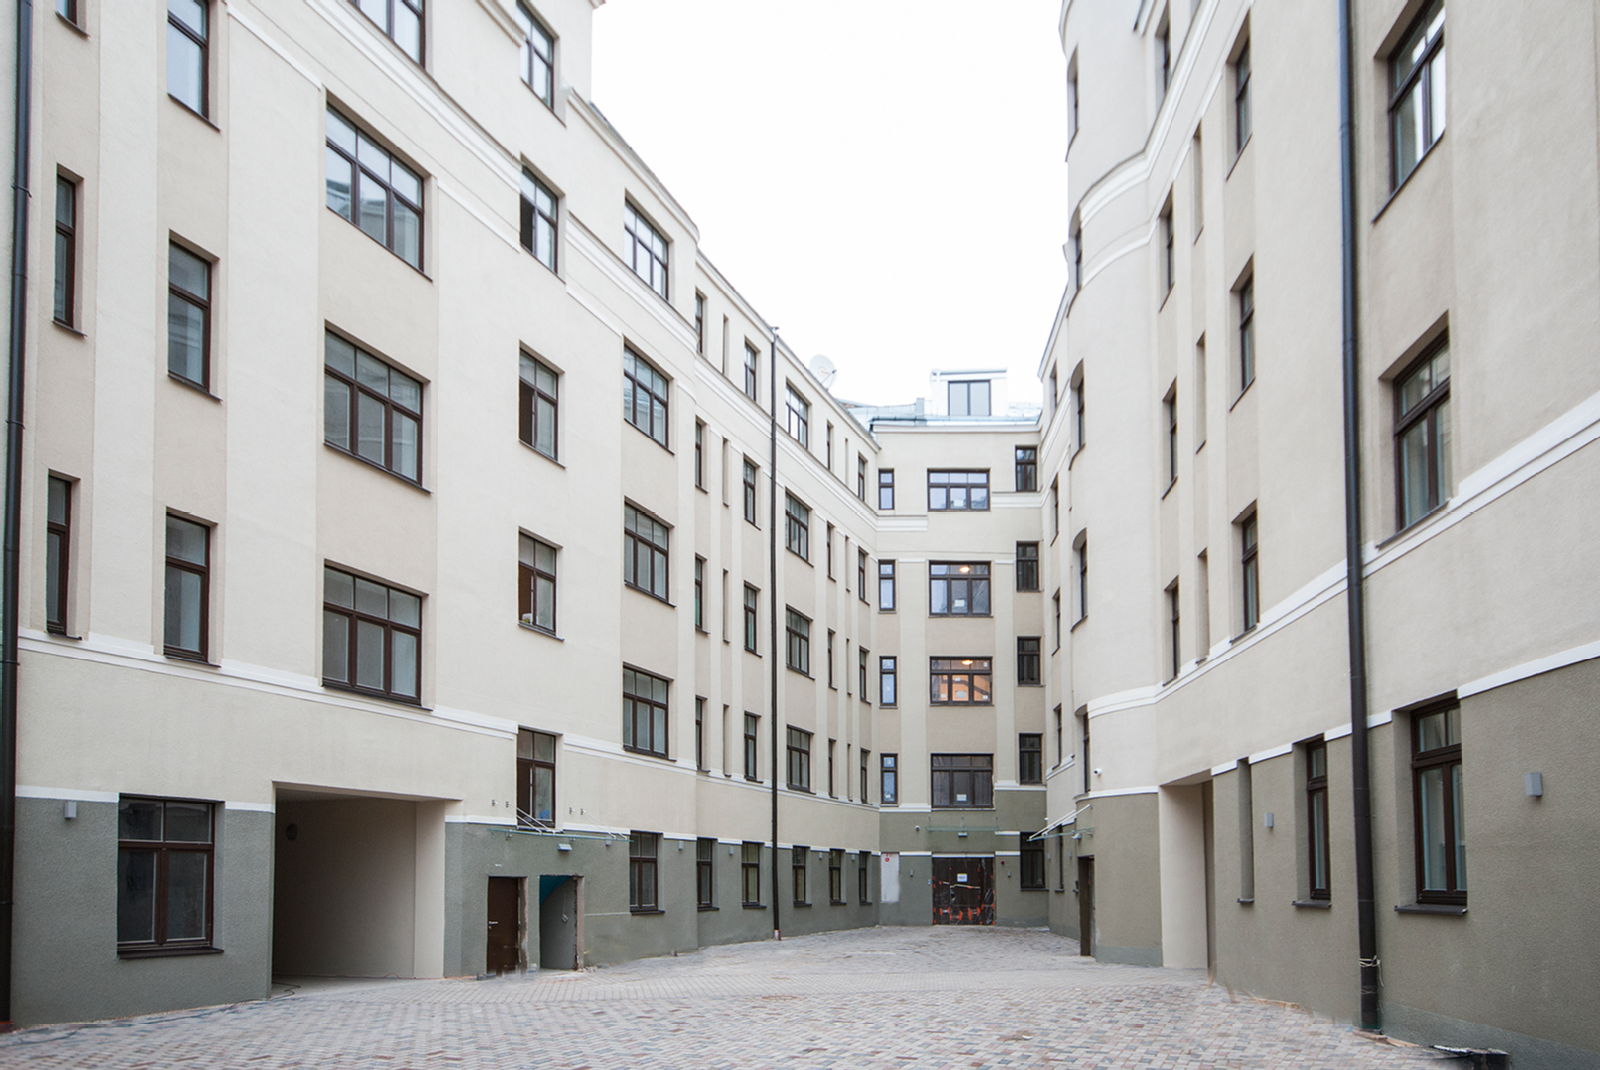 TOP 10 populārākie jaunie projekti Rīgas centrā - Nekustamo īpašumu ziņas - City24.lv nekustamo īpašumu sludinājumu portāls